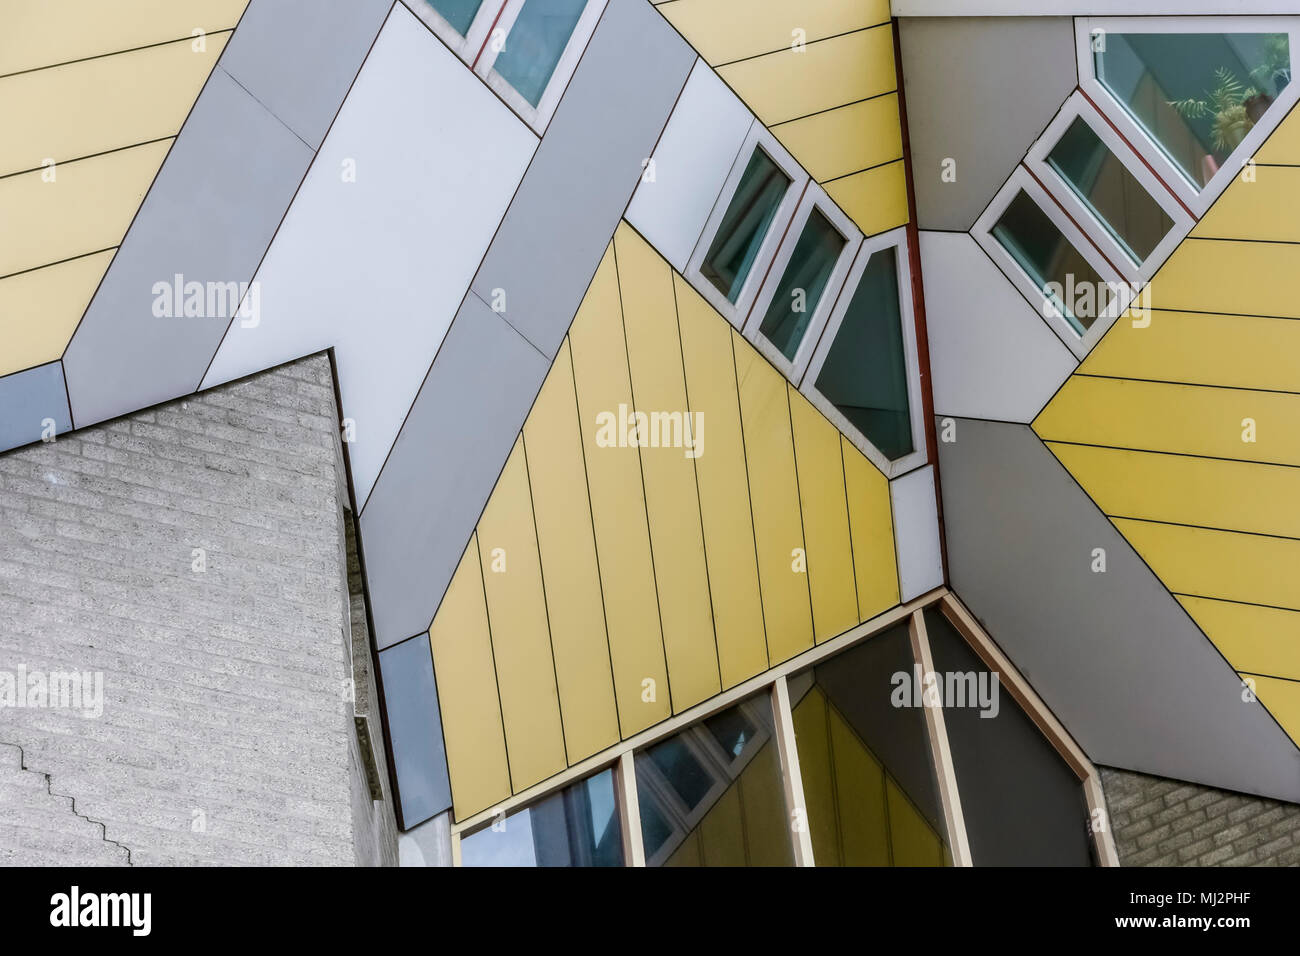 Kubische Häuser oder Kubuswoningen, entworfen vom Architekten Piet Blom. Architektur. Kijk Kubus. Blaak Bezirk, Rotterdam, Niederlande, Holland, Europa Stockfoto